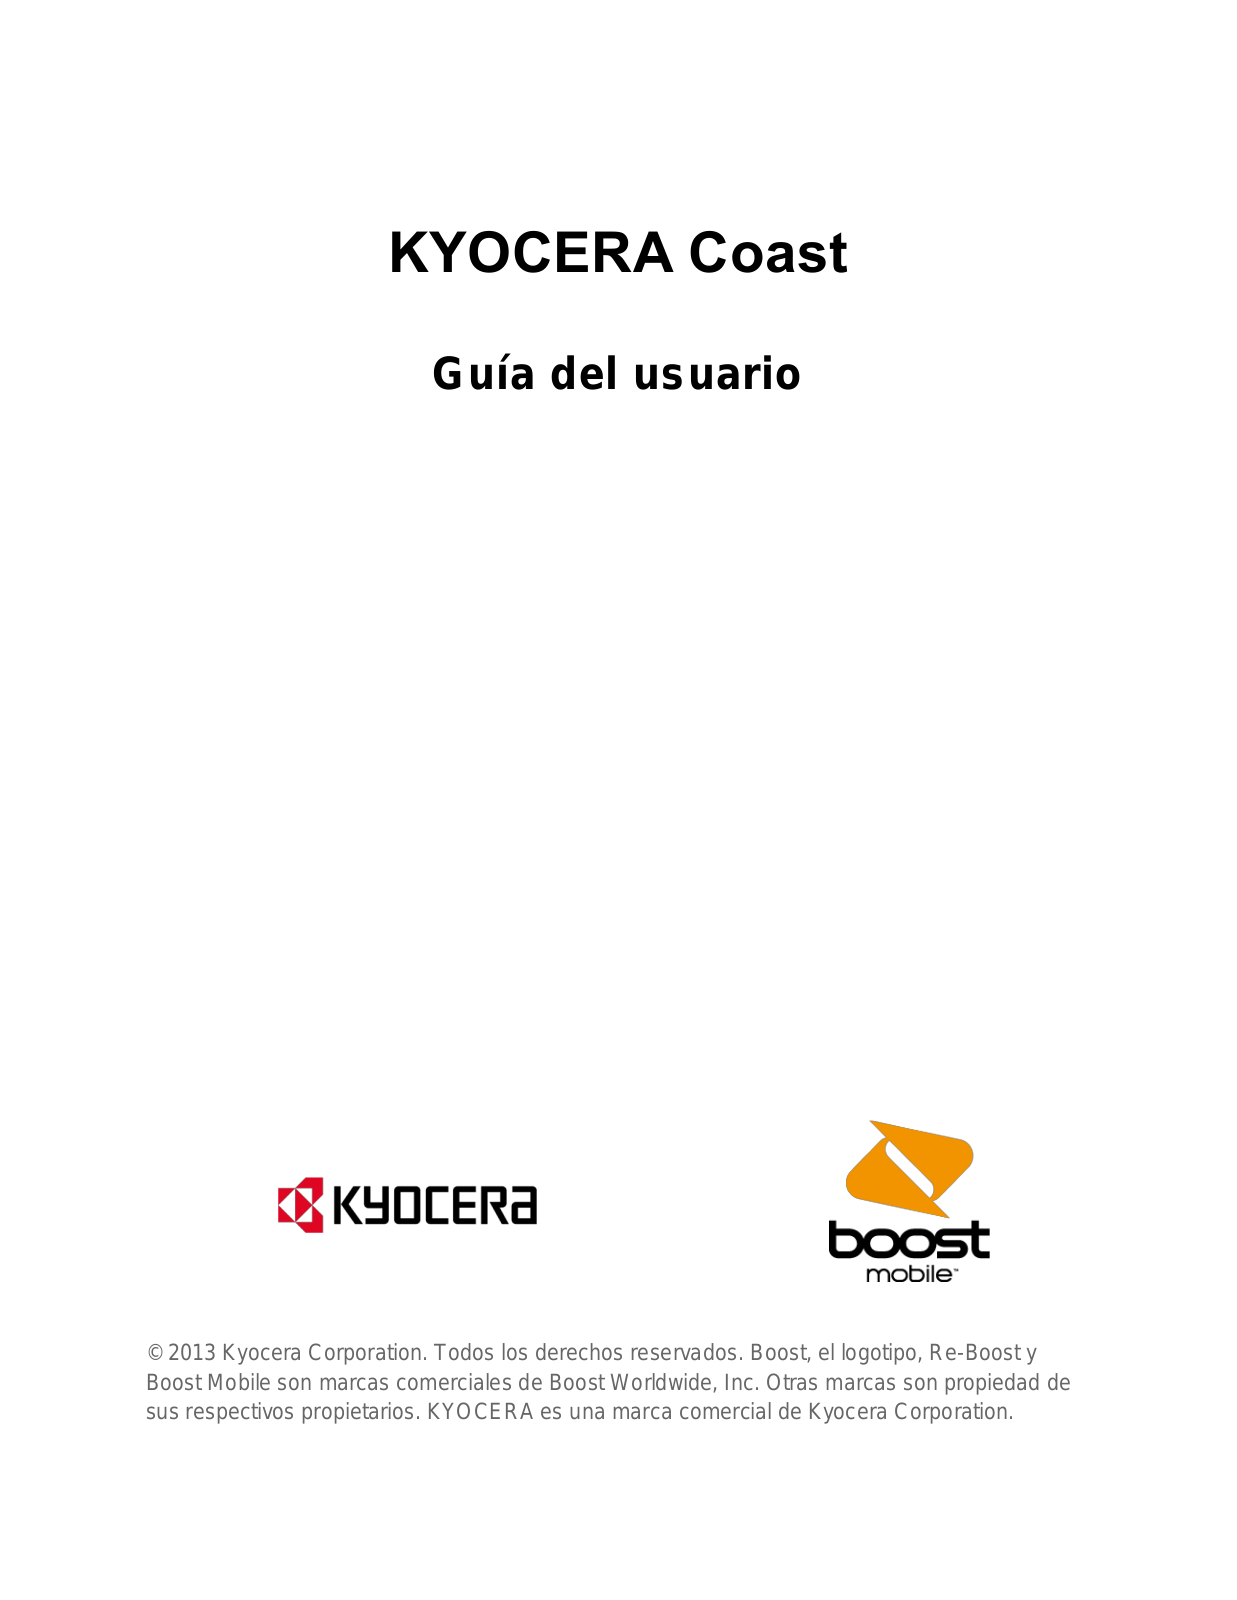 Kyocera Coast Instruction Manual